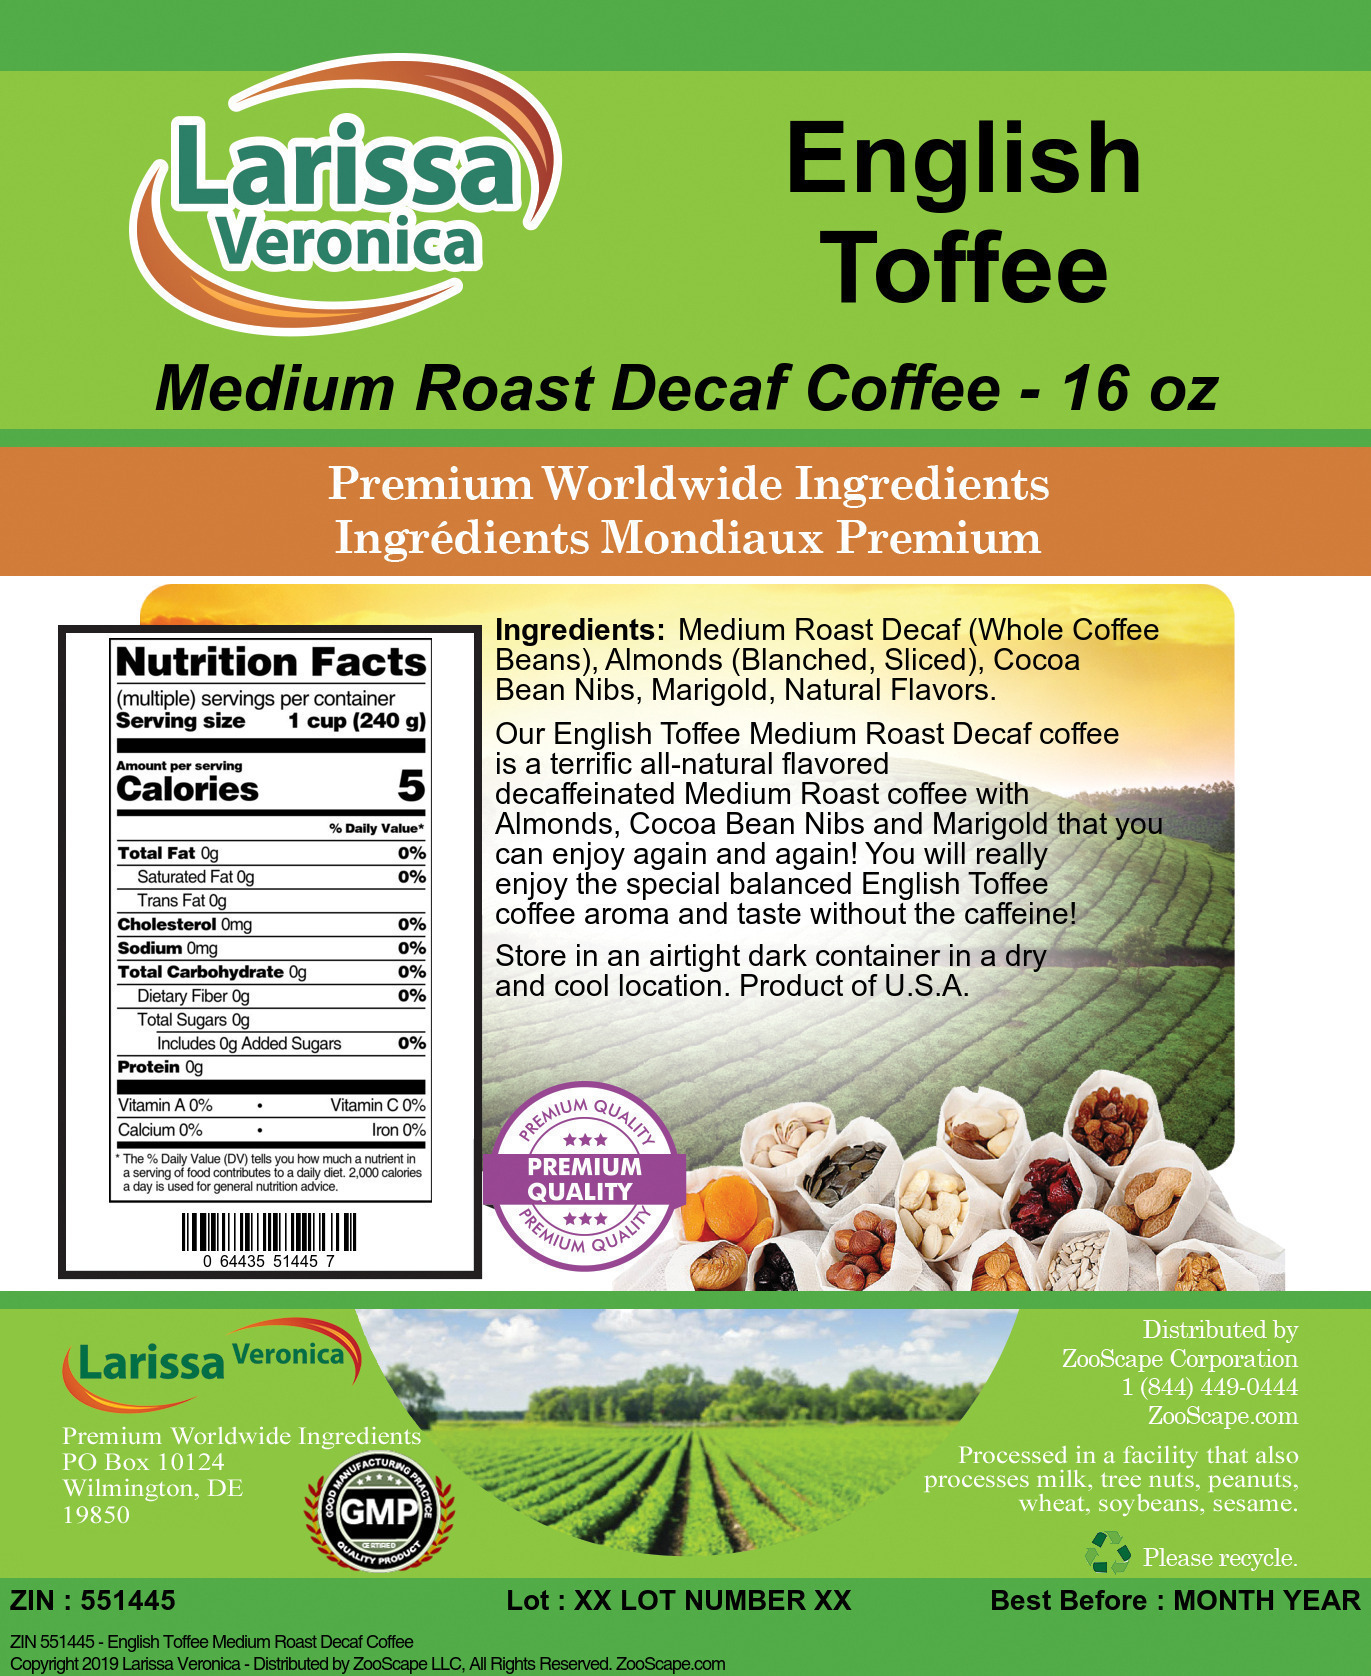 English Toffee Medium Roast Decaf Coffee - Label